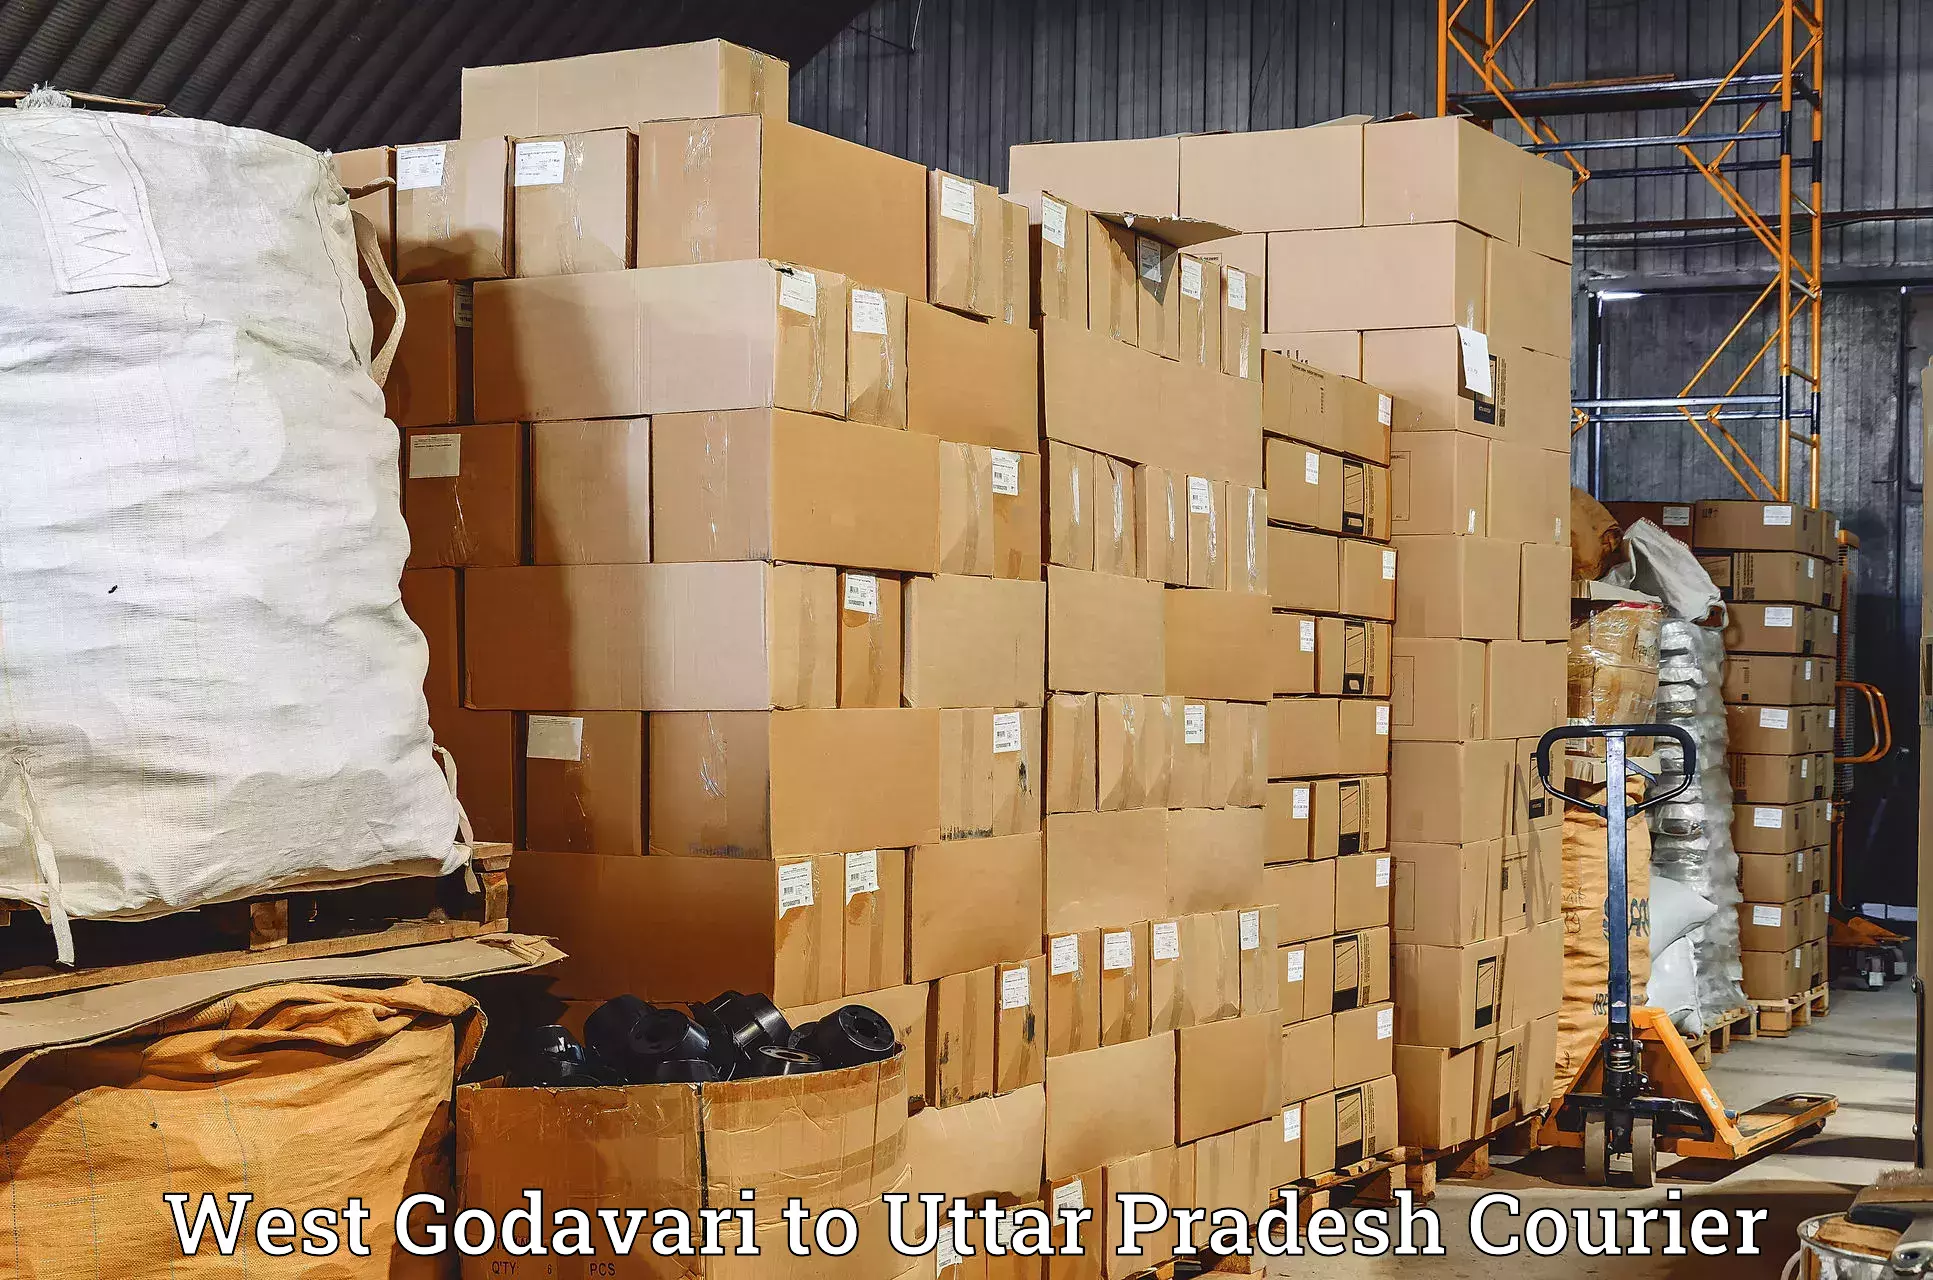 Customer-focused courier West Godavari to Itava